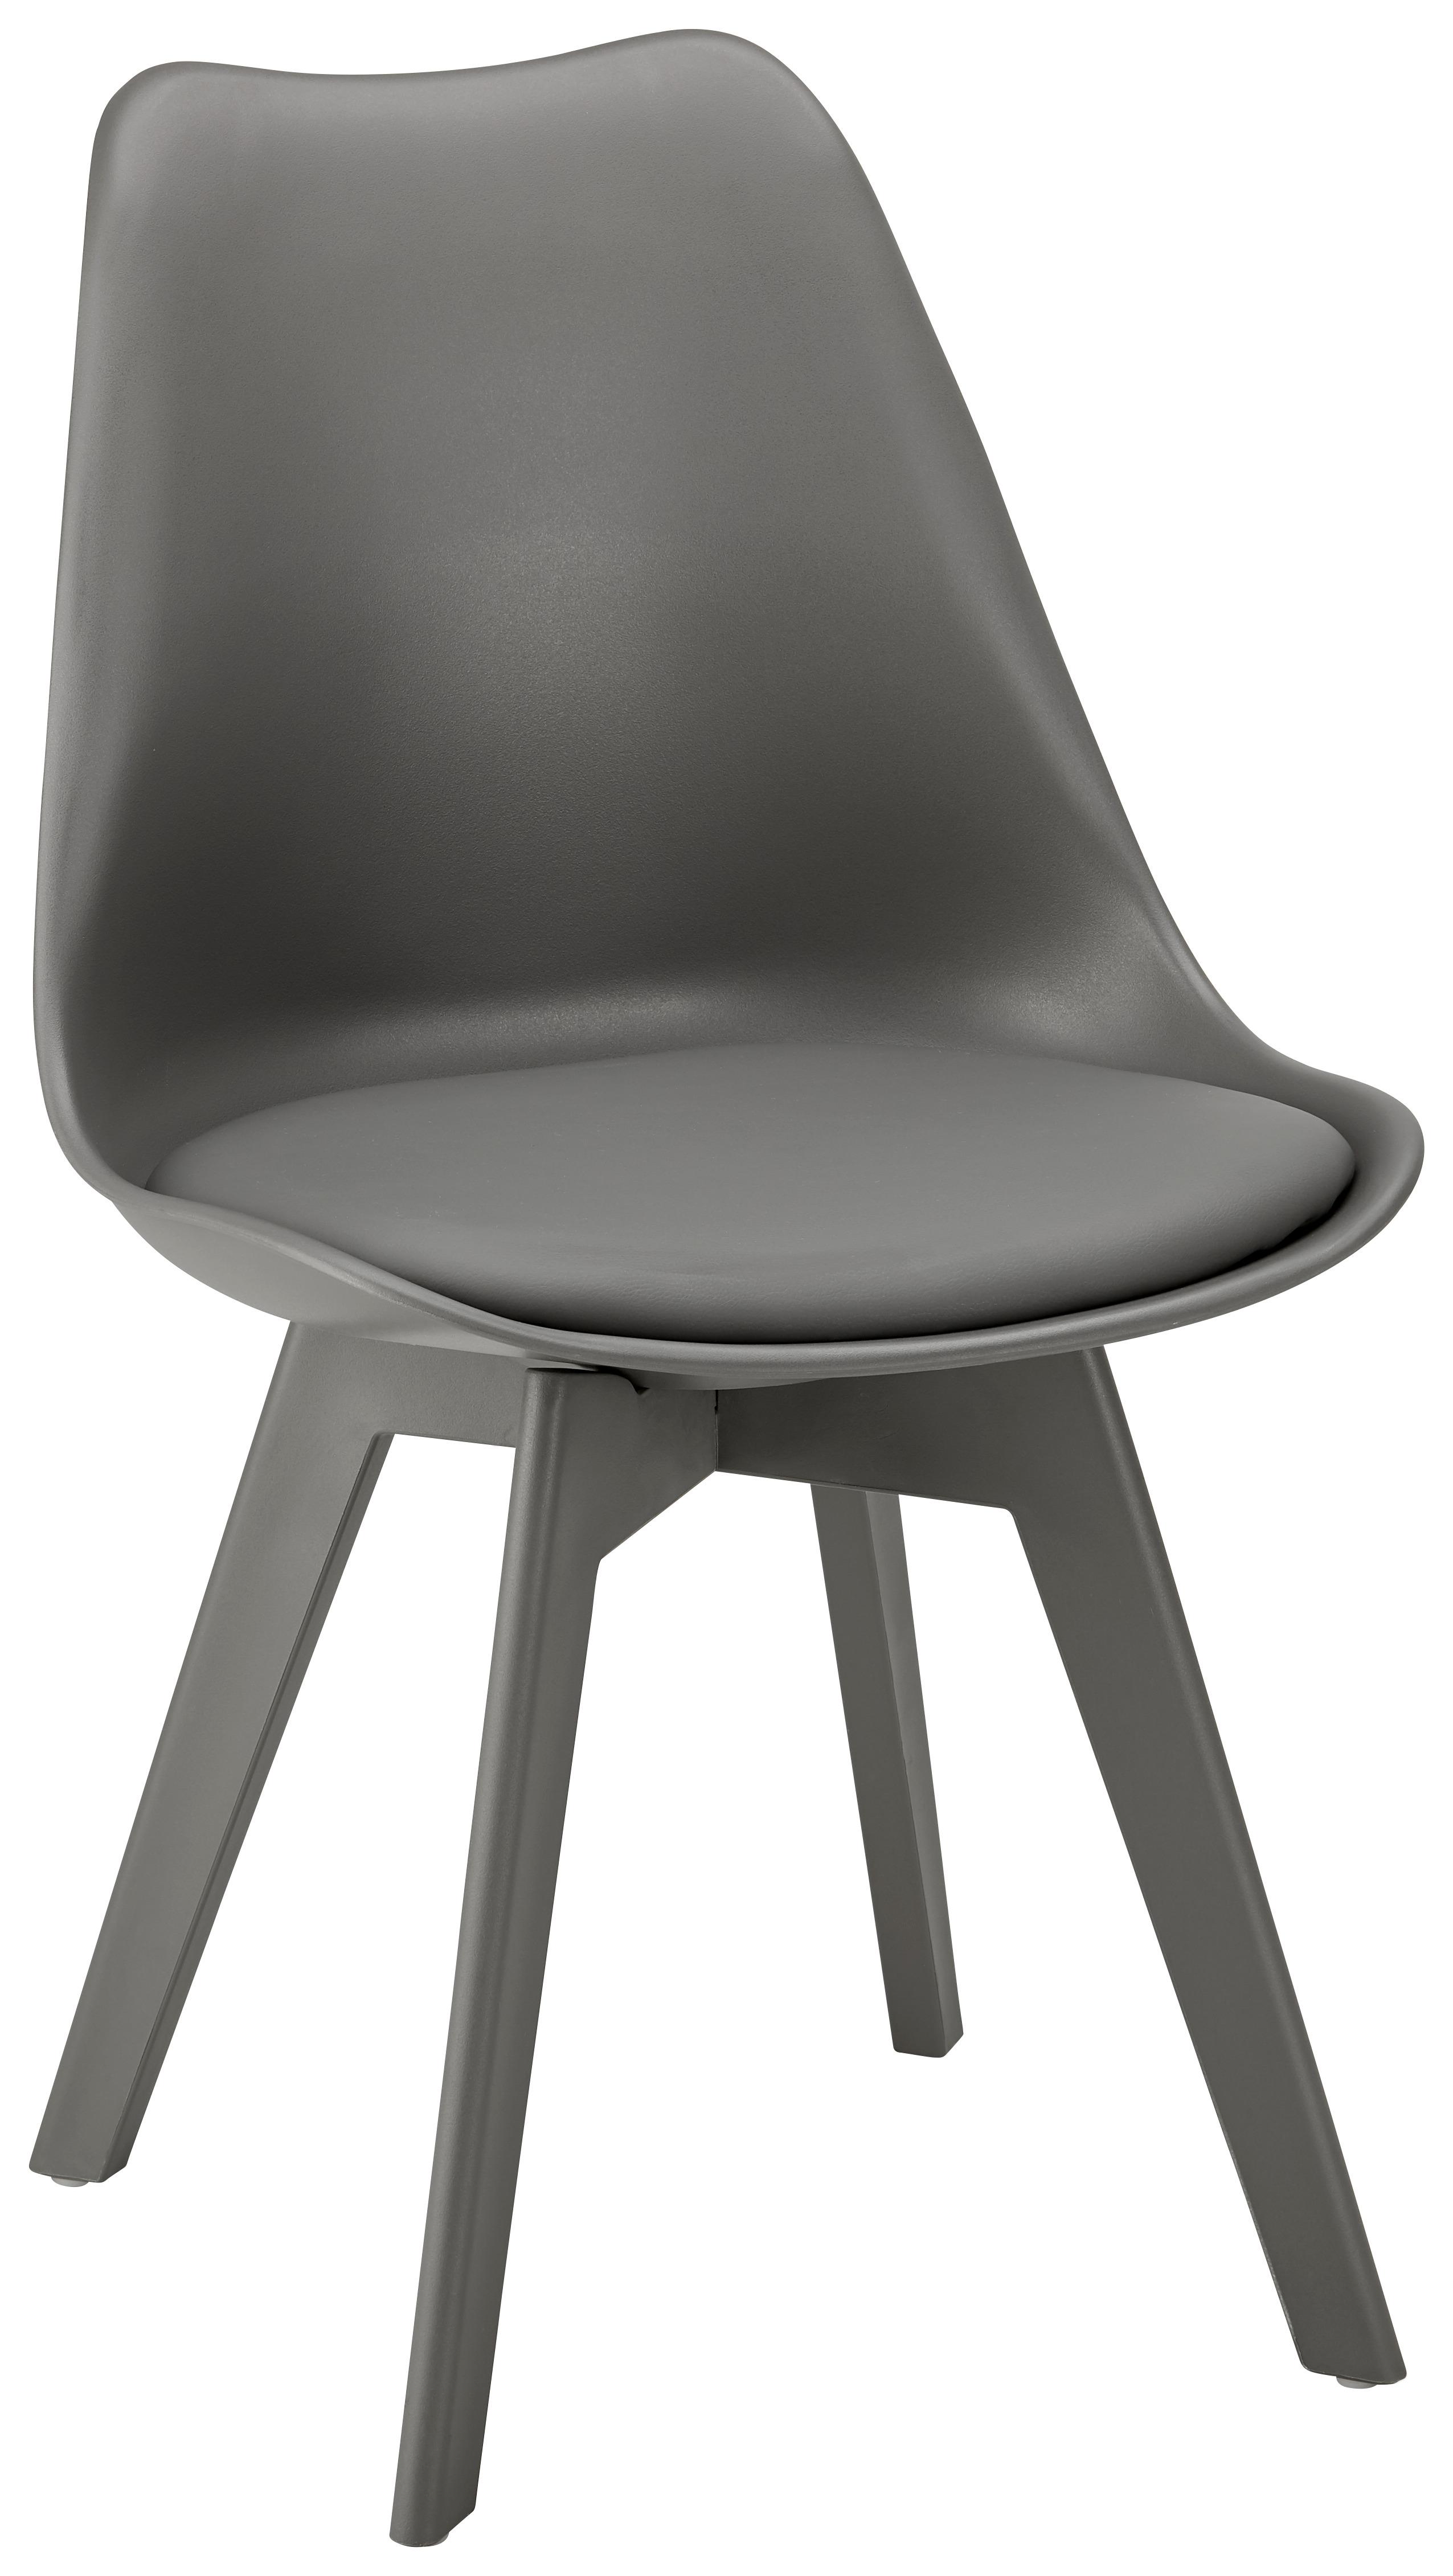 Stuhl "Vega", grau - Grau, MODERN, Kunststoff (46/83/54cm) - Bessagi Home